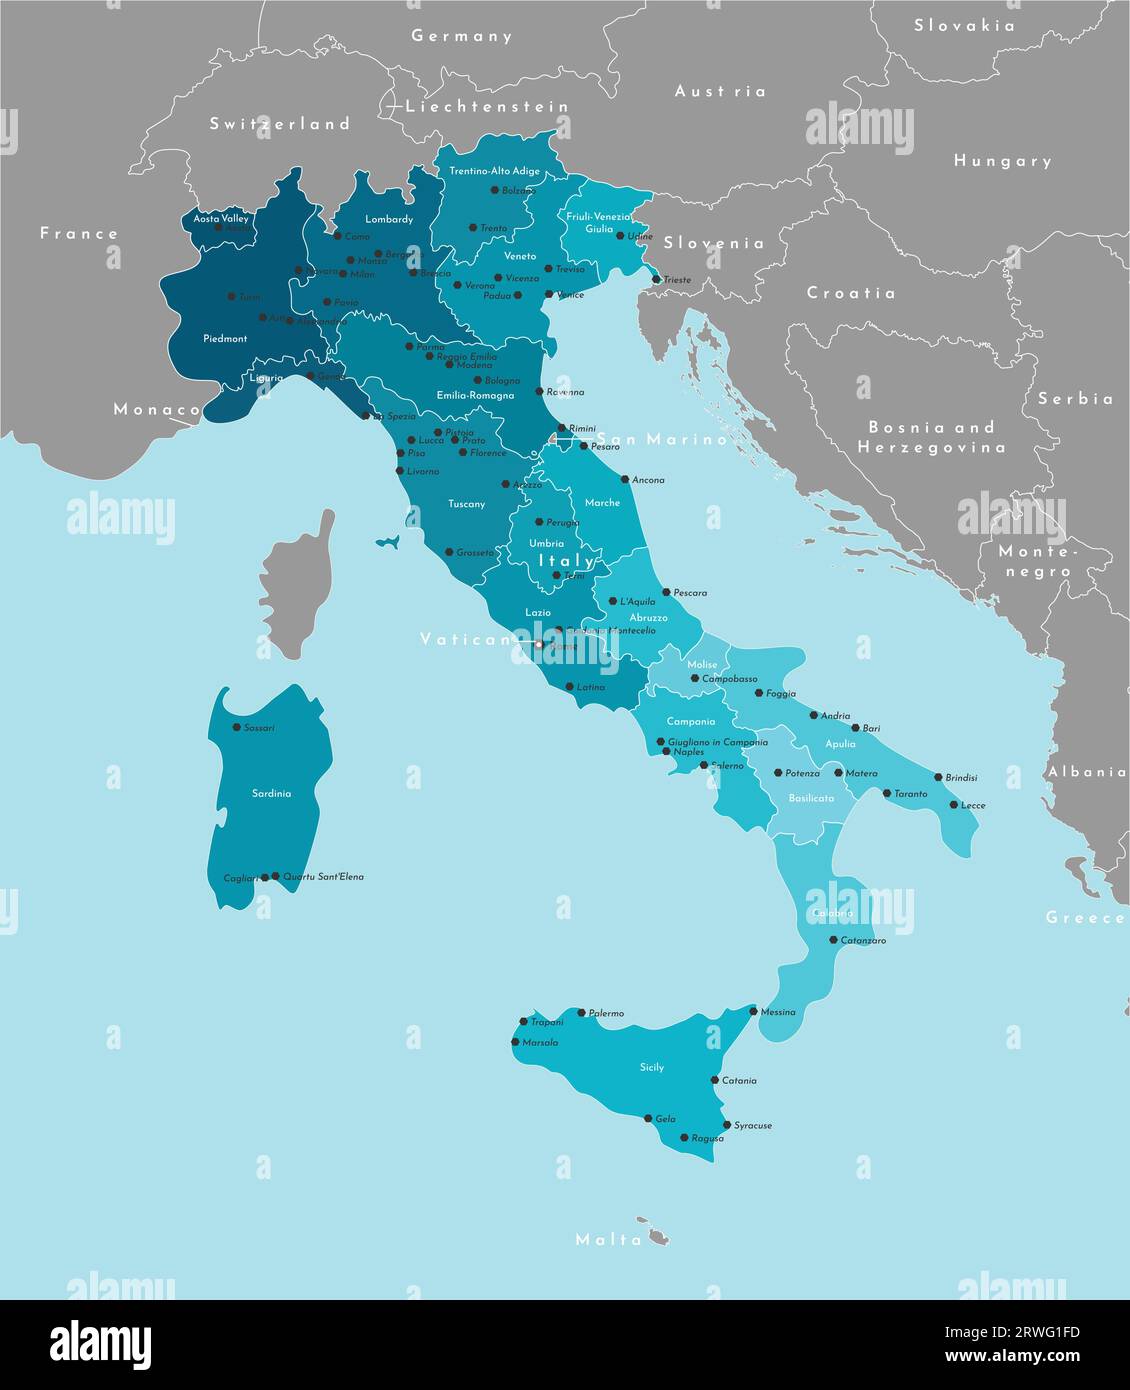 Illustrazione vettoriale moderna. Mappa amministrativa semplificata dell'Italia e confini con i paesi europei confinanti. Sfondo blu dei mari. Nomi di Illustrazione Vettoriale